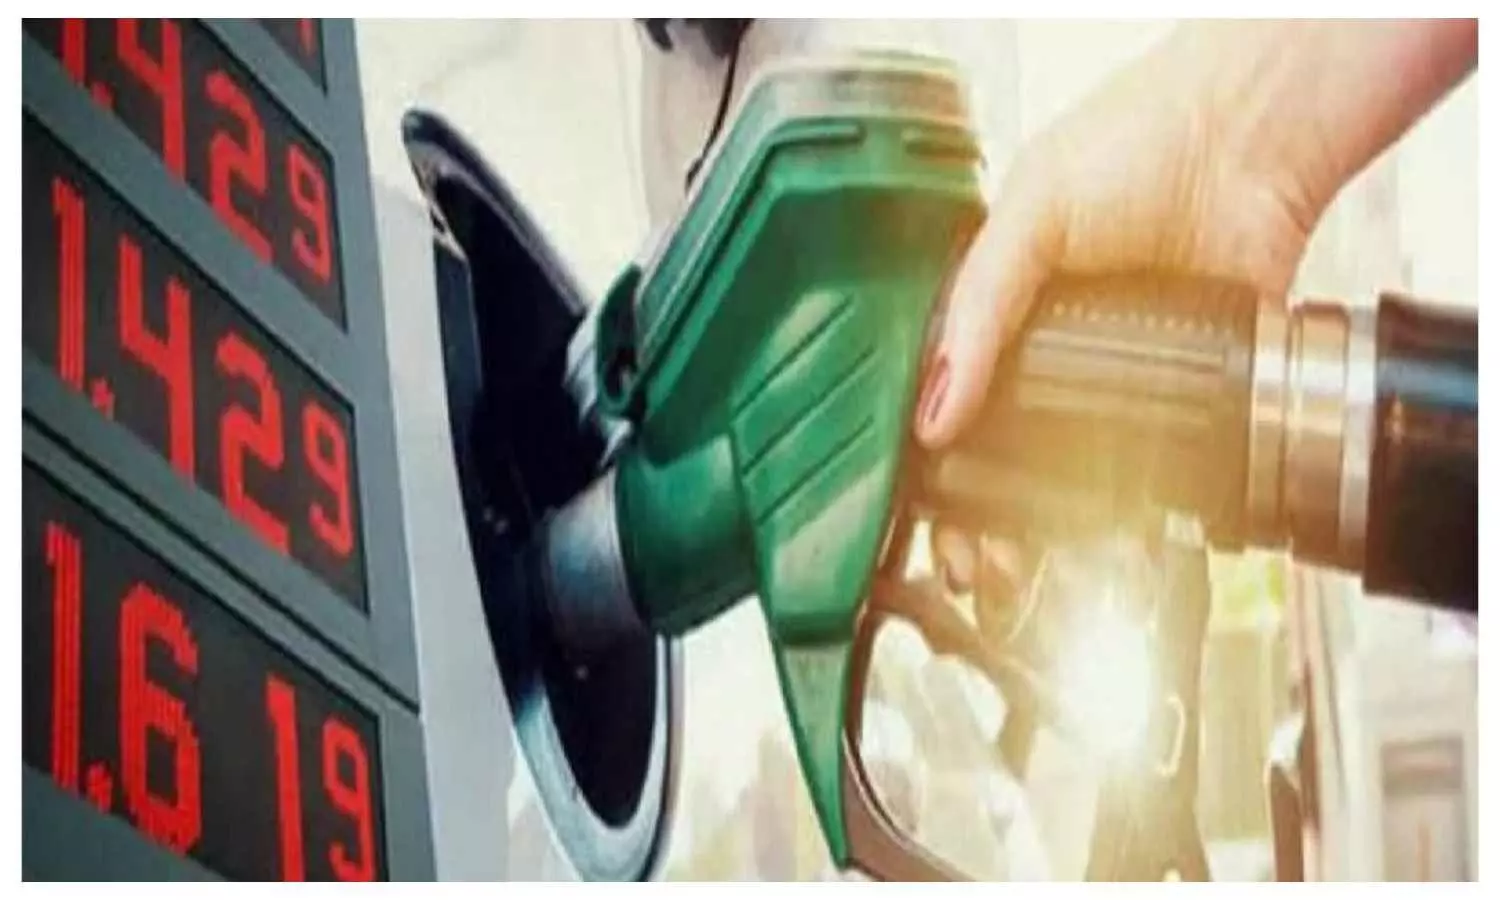 UP Petrol Diesel Price Today: वाहन ईंधन के नए रेट हुए जारी, लखनऊ सहित कई जिलों में बढ़े दाम